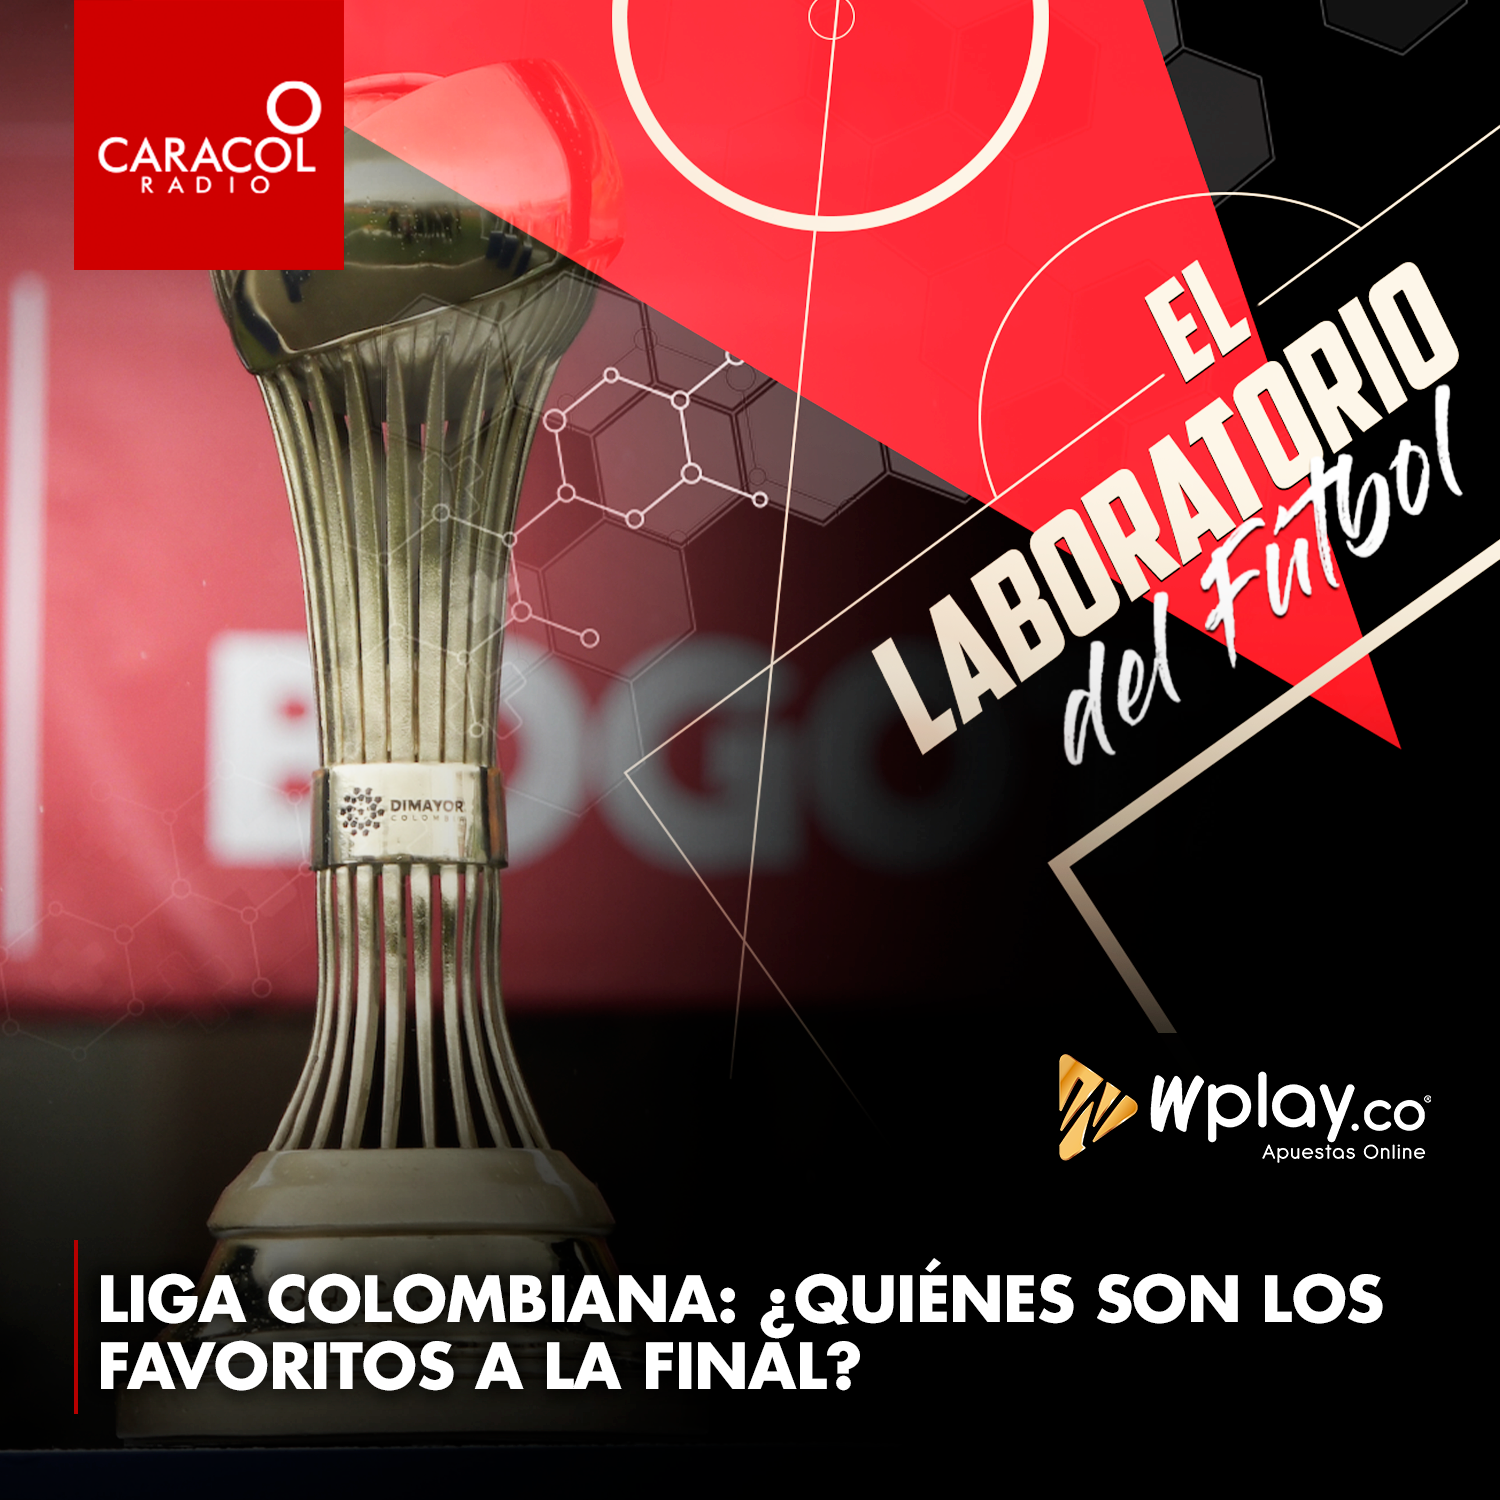 Liga colombiana: ¿Quiénes son los favoritos a la final?